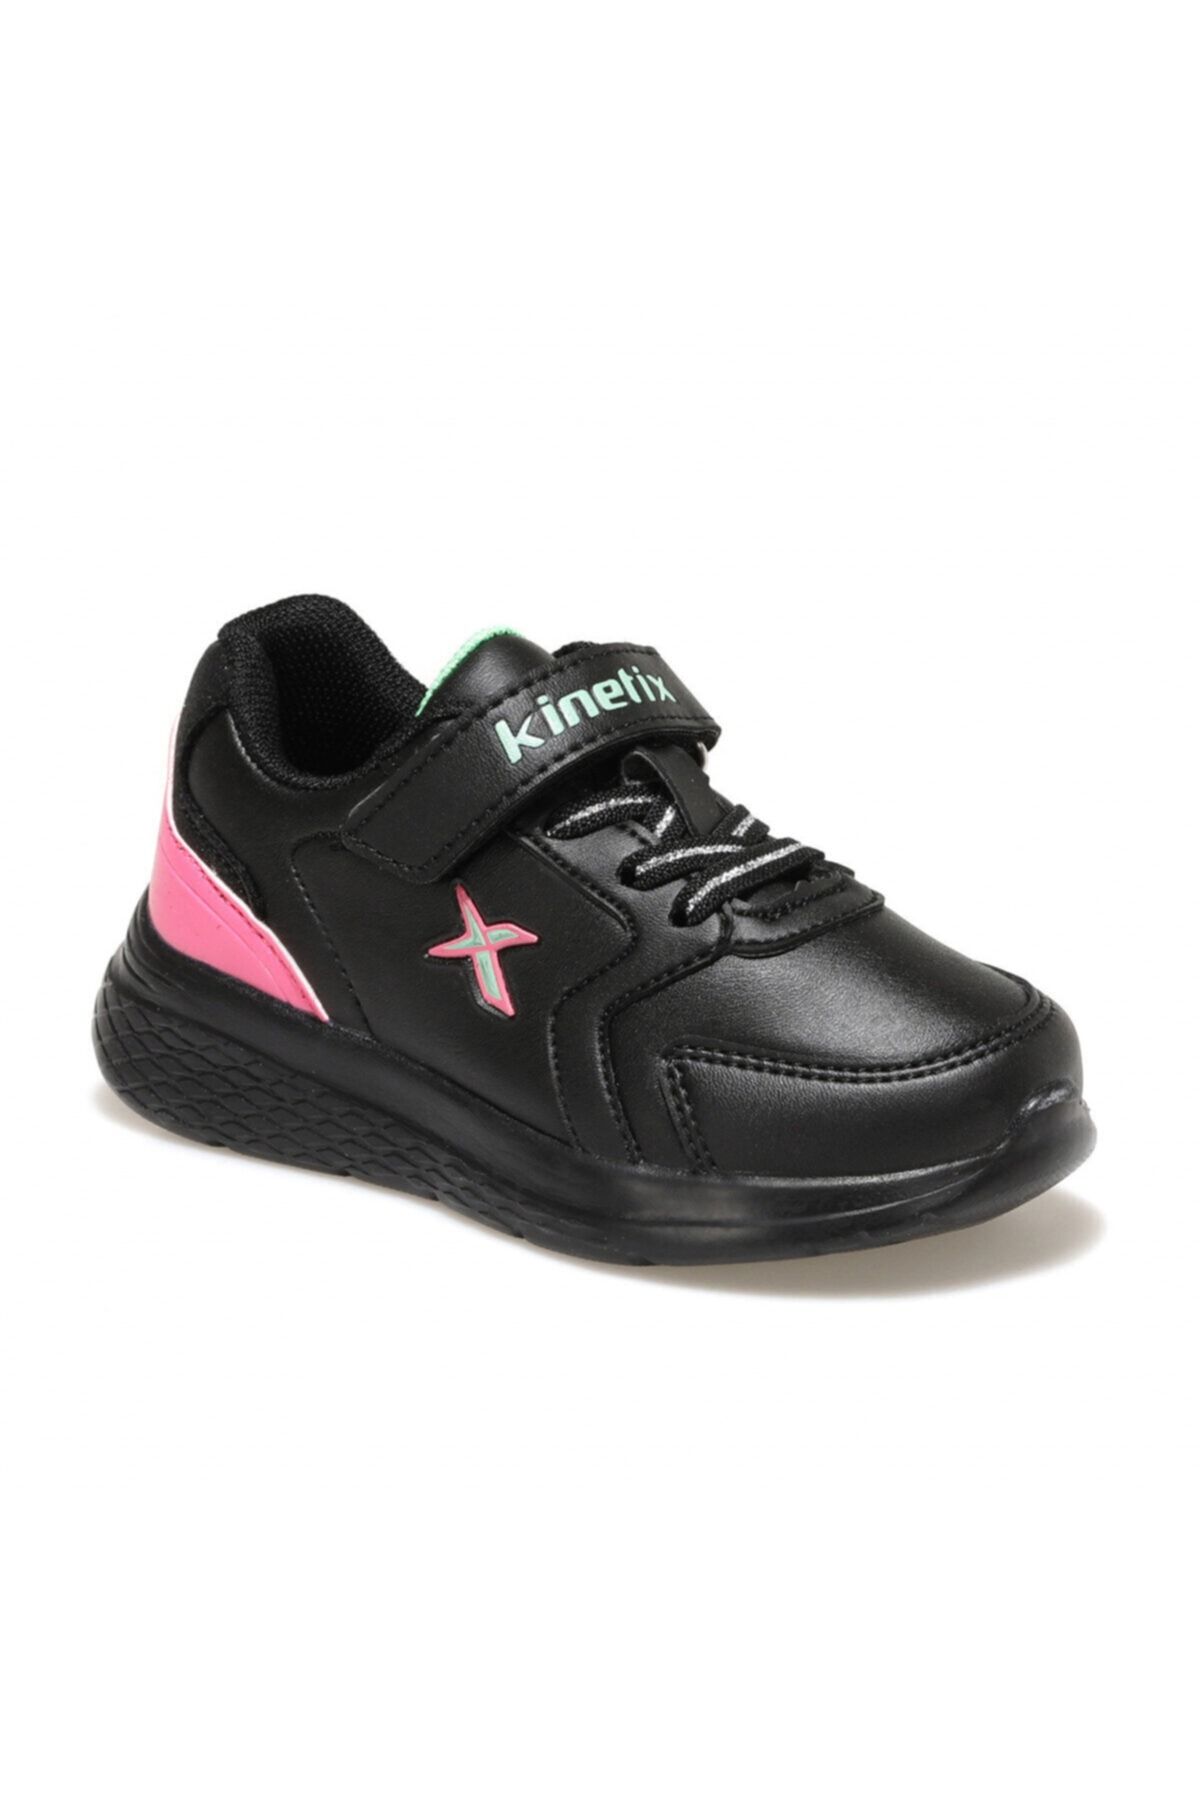 Kinetix MARNED J Siyah Kız Çocuk Yürüyüş Ayakkabısı 100534005